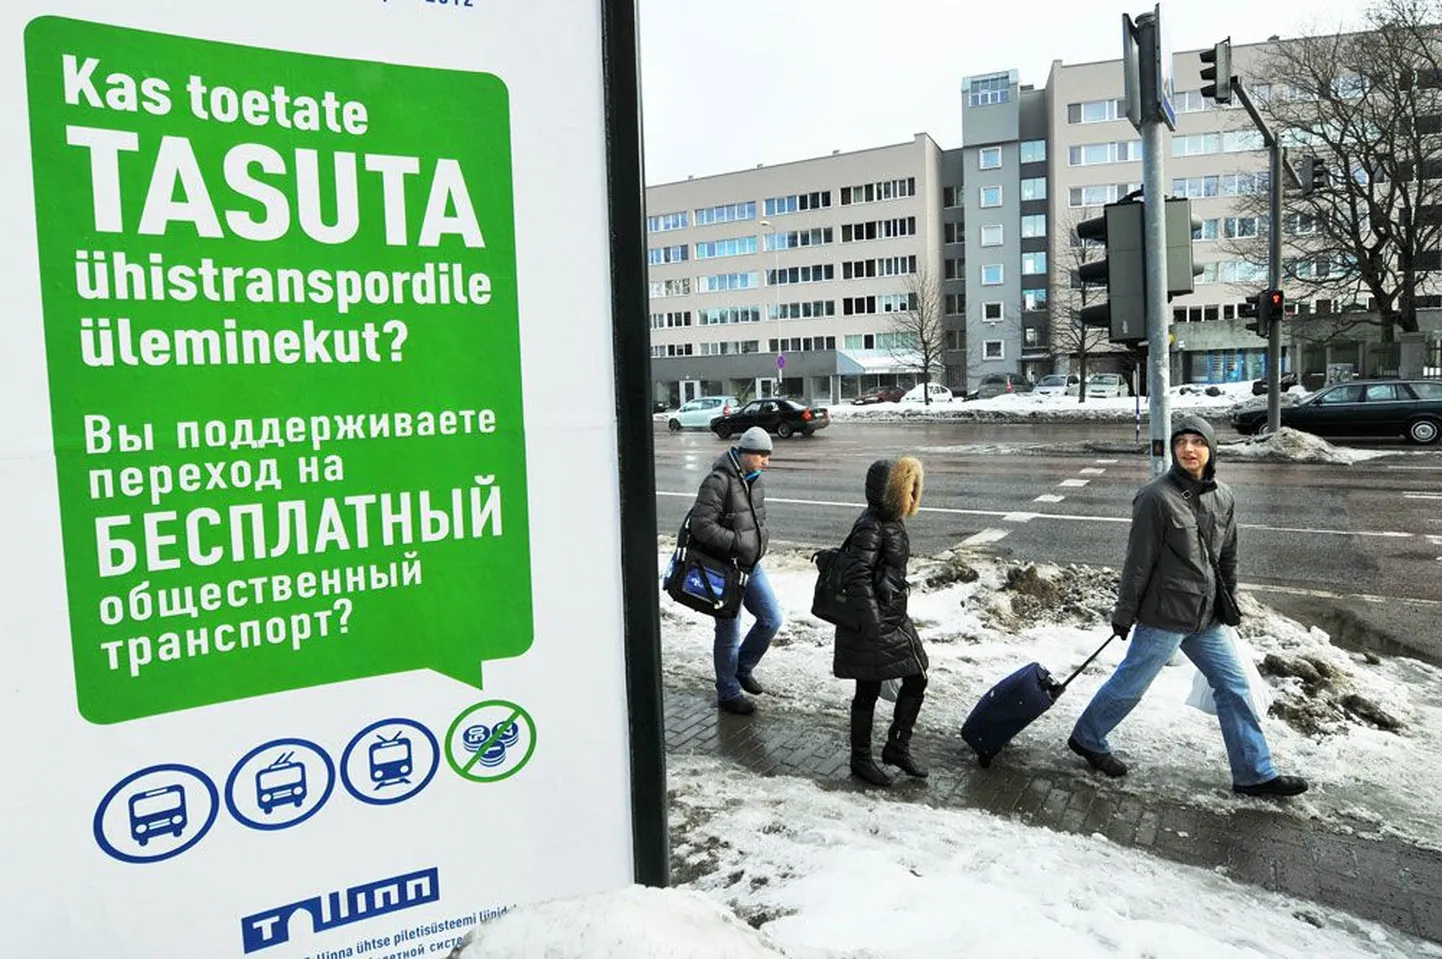 Linnaelanikke tasuta ühistranspordi teemalisele küsitlusele kutsuv plakat Tallinnas Liivalaia tänaval.